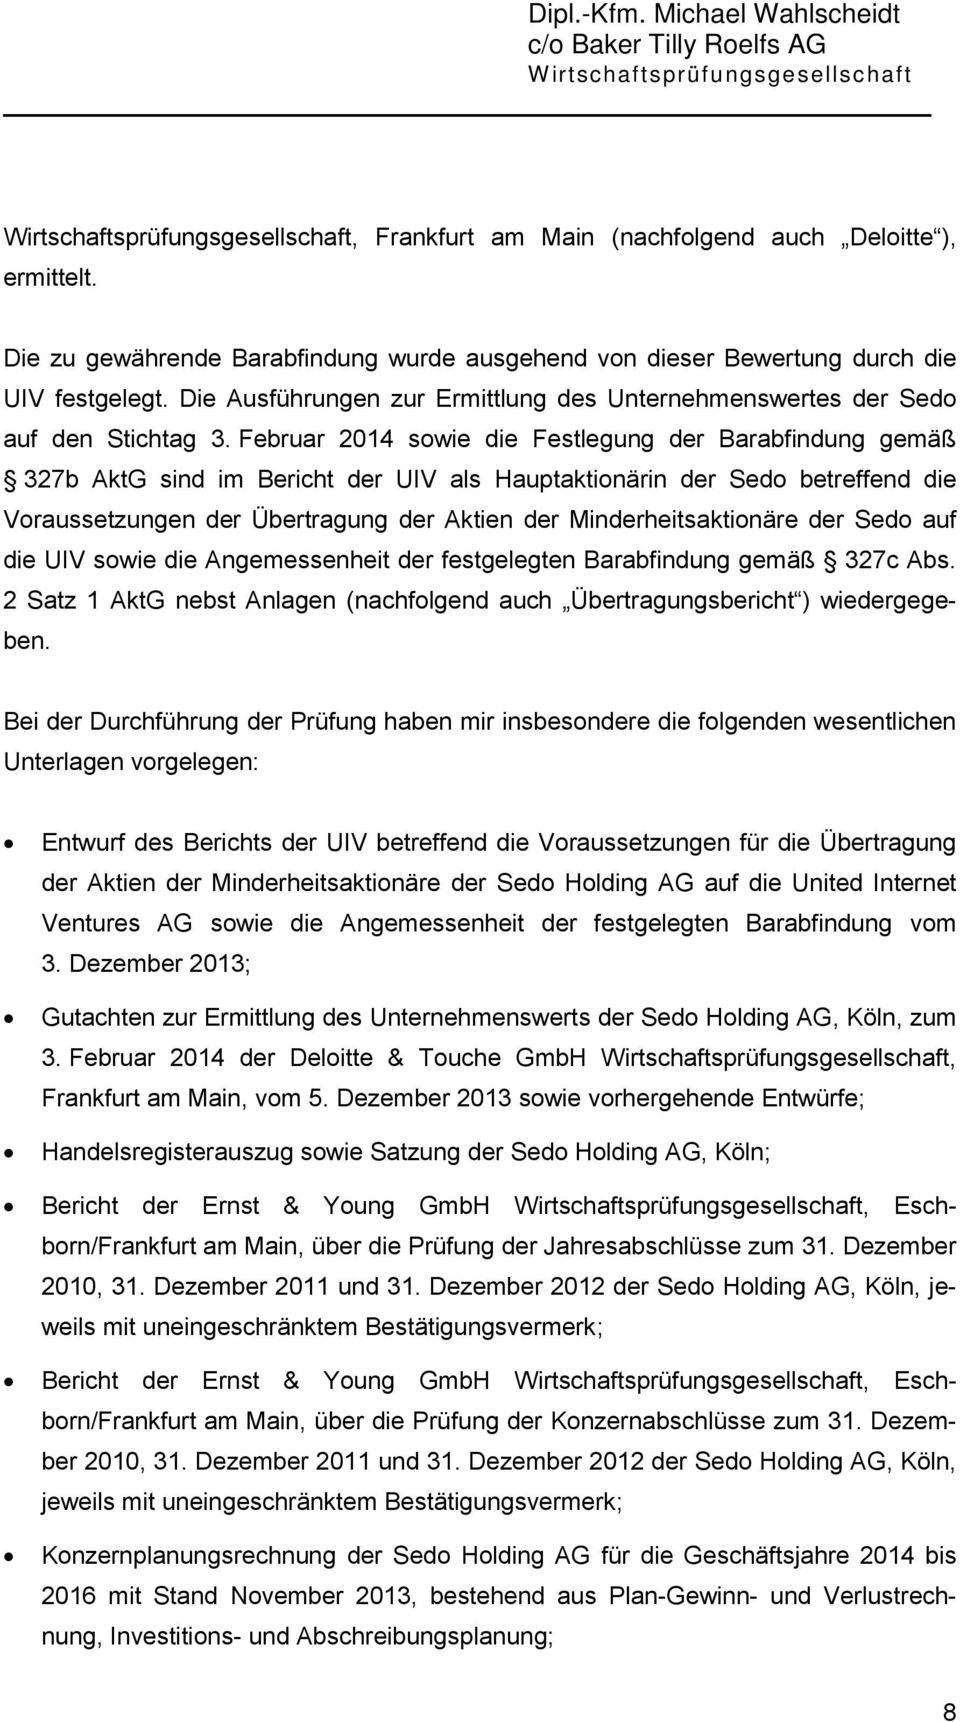 Februar 2014 sowie die Festlegung der Barabfindung gemäß 327b AktG sind im Bericht der UIV als Hauptaktionärin der Sedo betreffend die Voraussetzungen der Übertragung der Aktien der